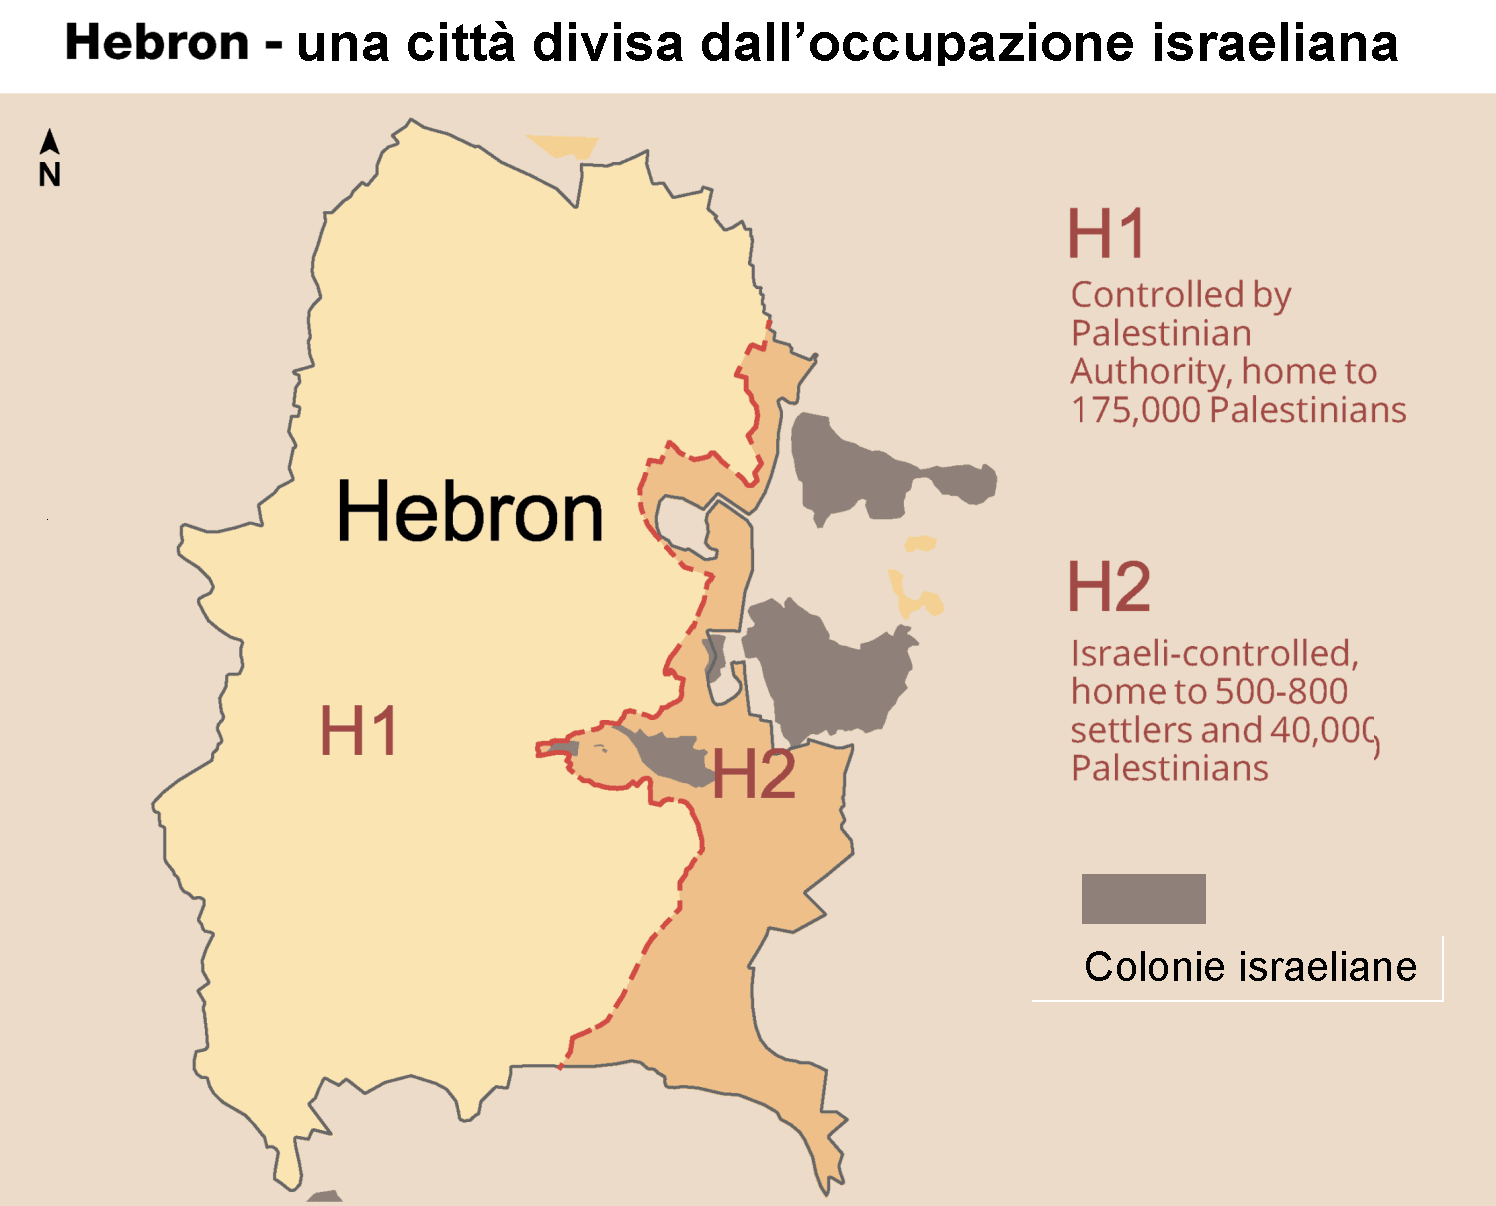 Un report confidenziale, basato su venti anni di monitoraggio, afferma che nella città di Hebron Israele sta sistematicamente violando il diritto internazionale.